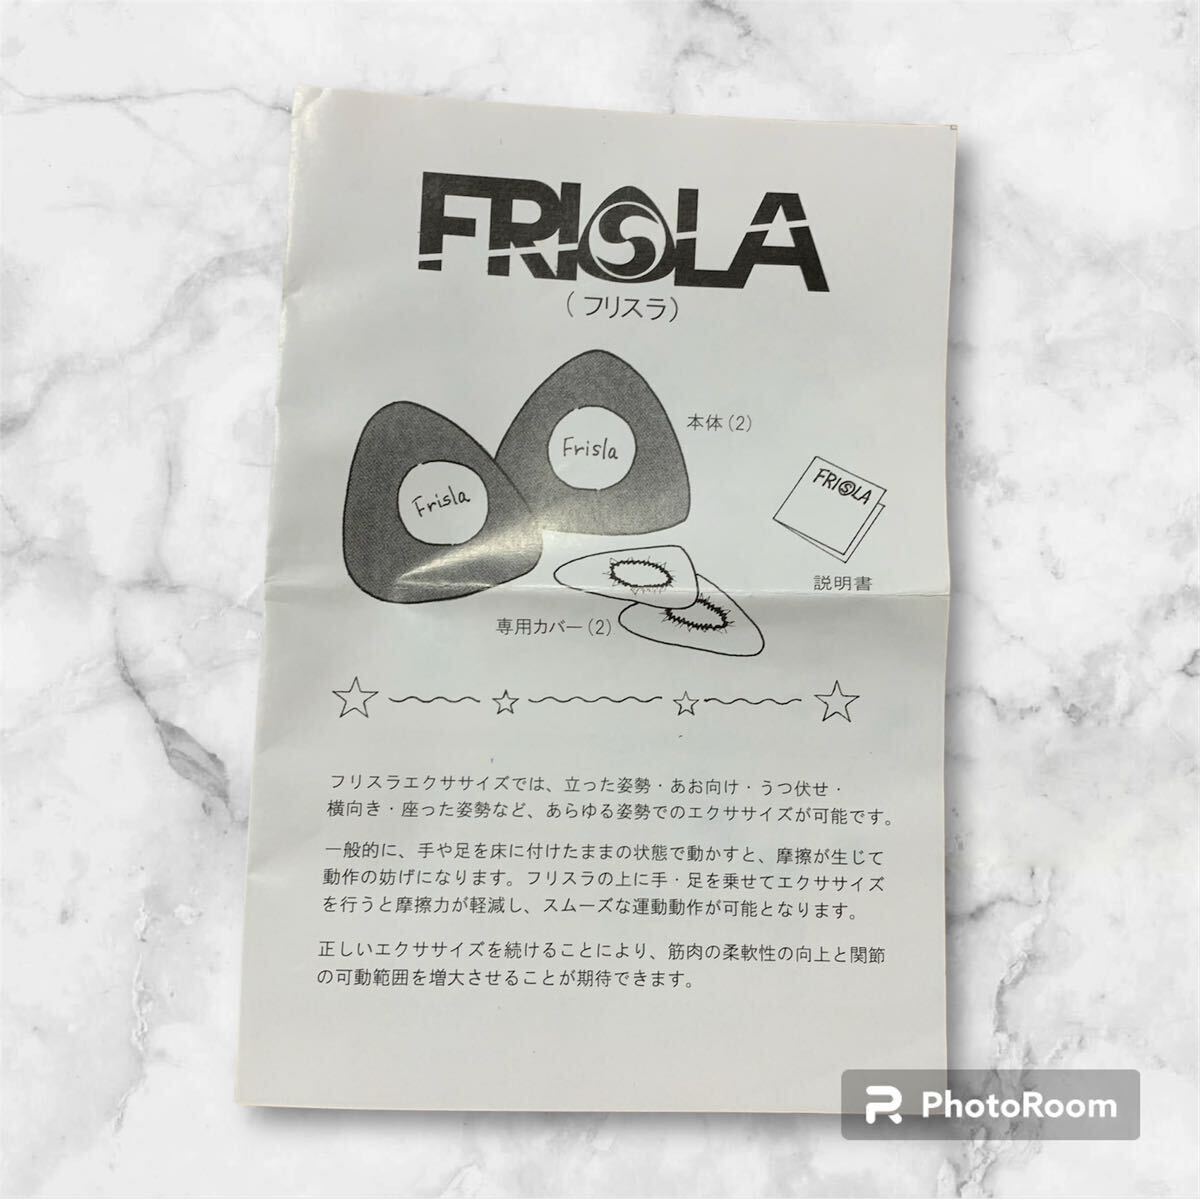 フリスラ Frisla フリースライディングディスク スライドディスク フローリングタイプ ストレッチ ヨガ yoga エクセサイズ ヨガディスク